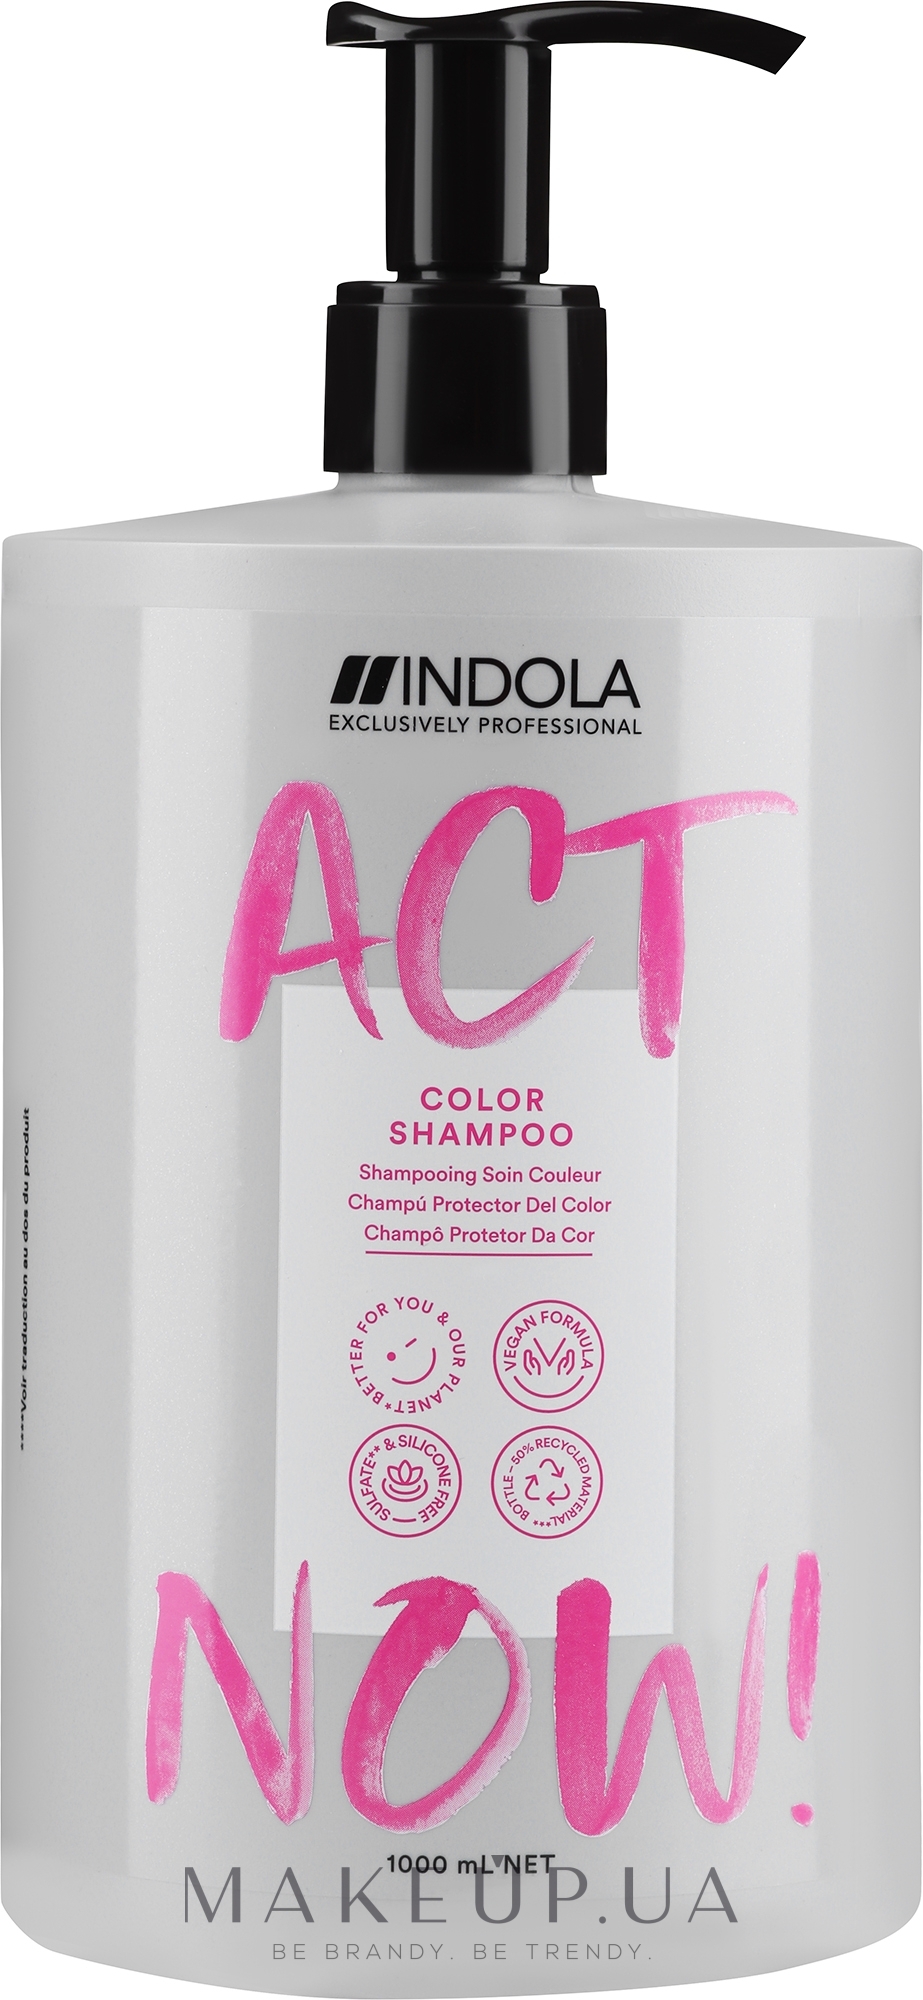 Шампунь для окрашенных волос - Indola Act Now! Color Shampoo — фото 1000ml